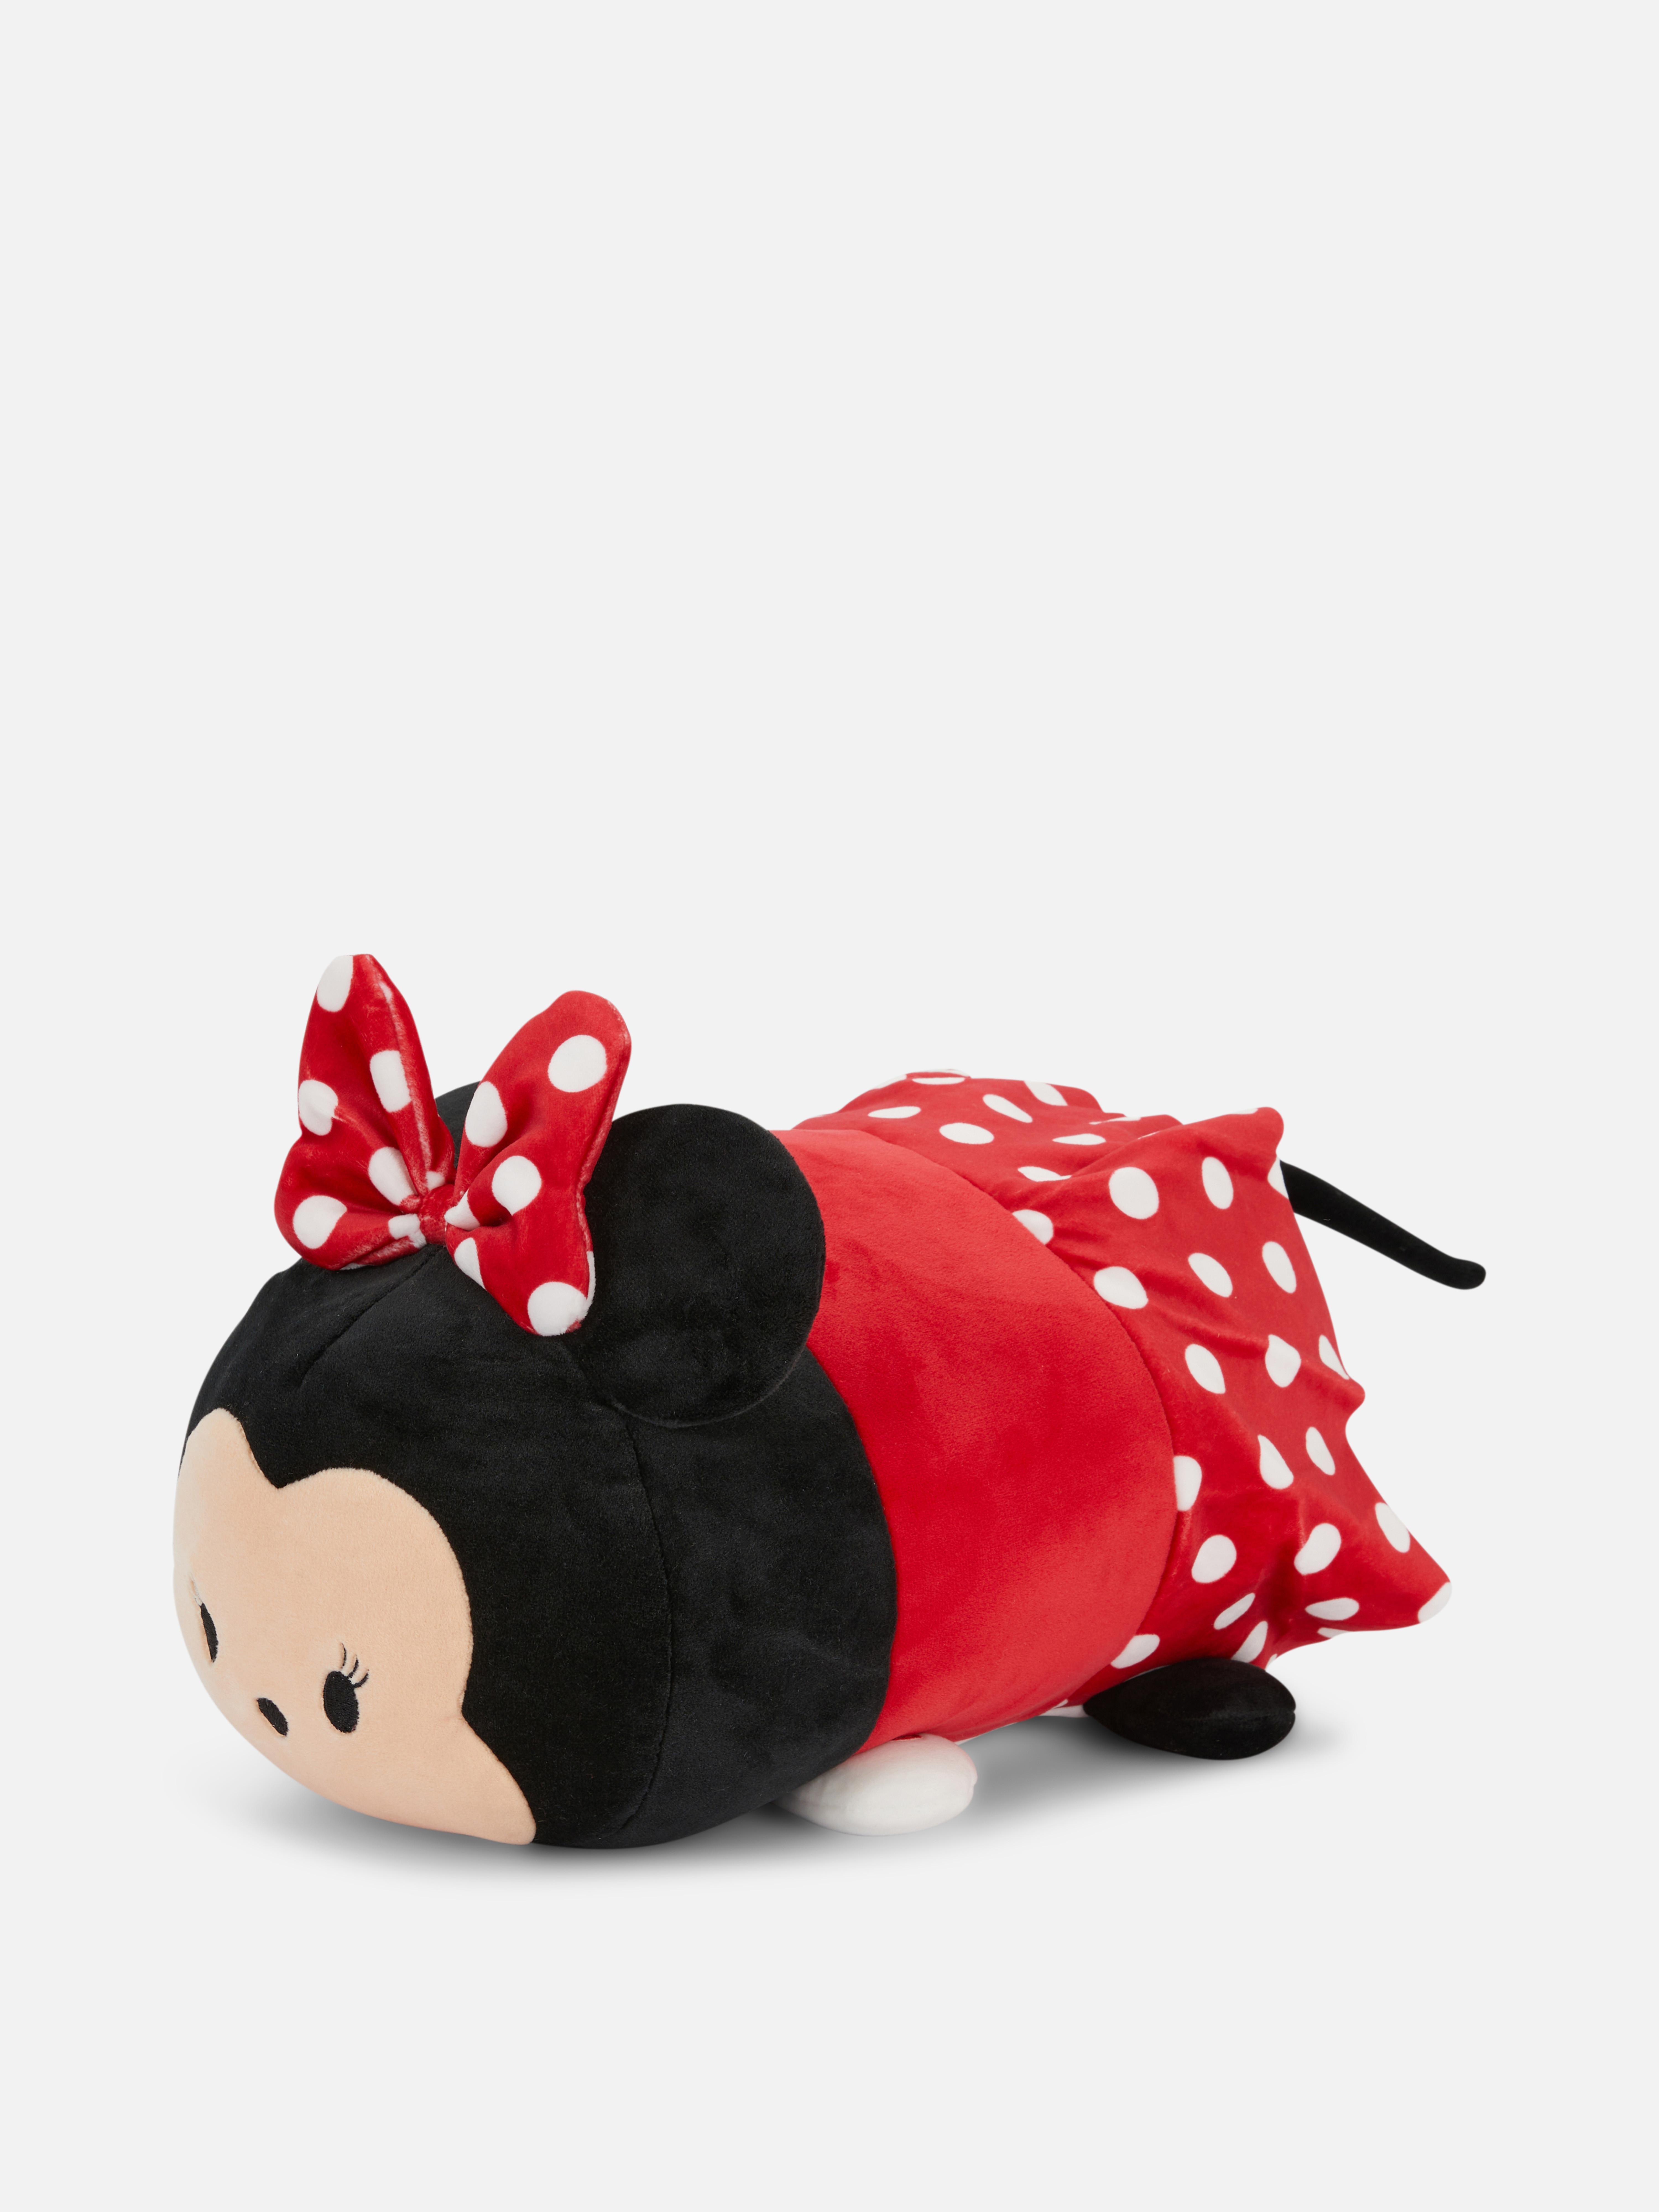 Disney’s Tsum Tsum Minnie Mouse Plush Toy